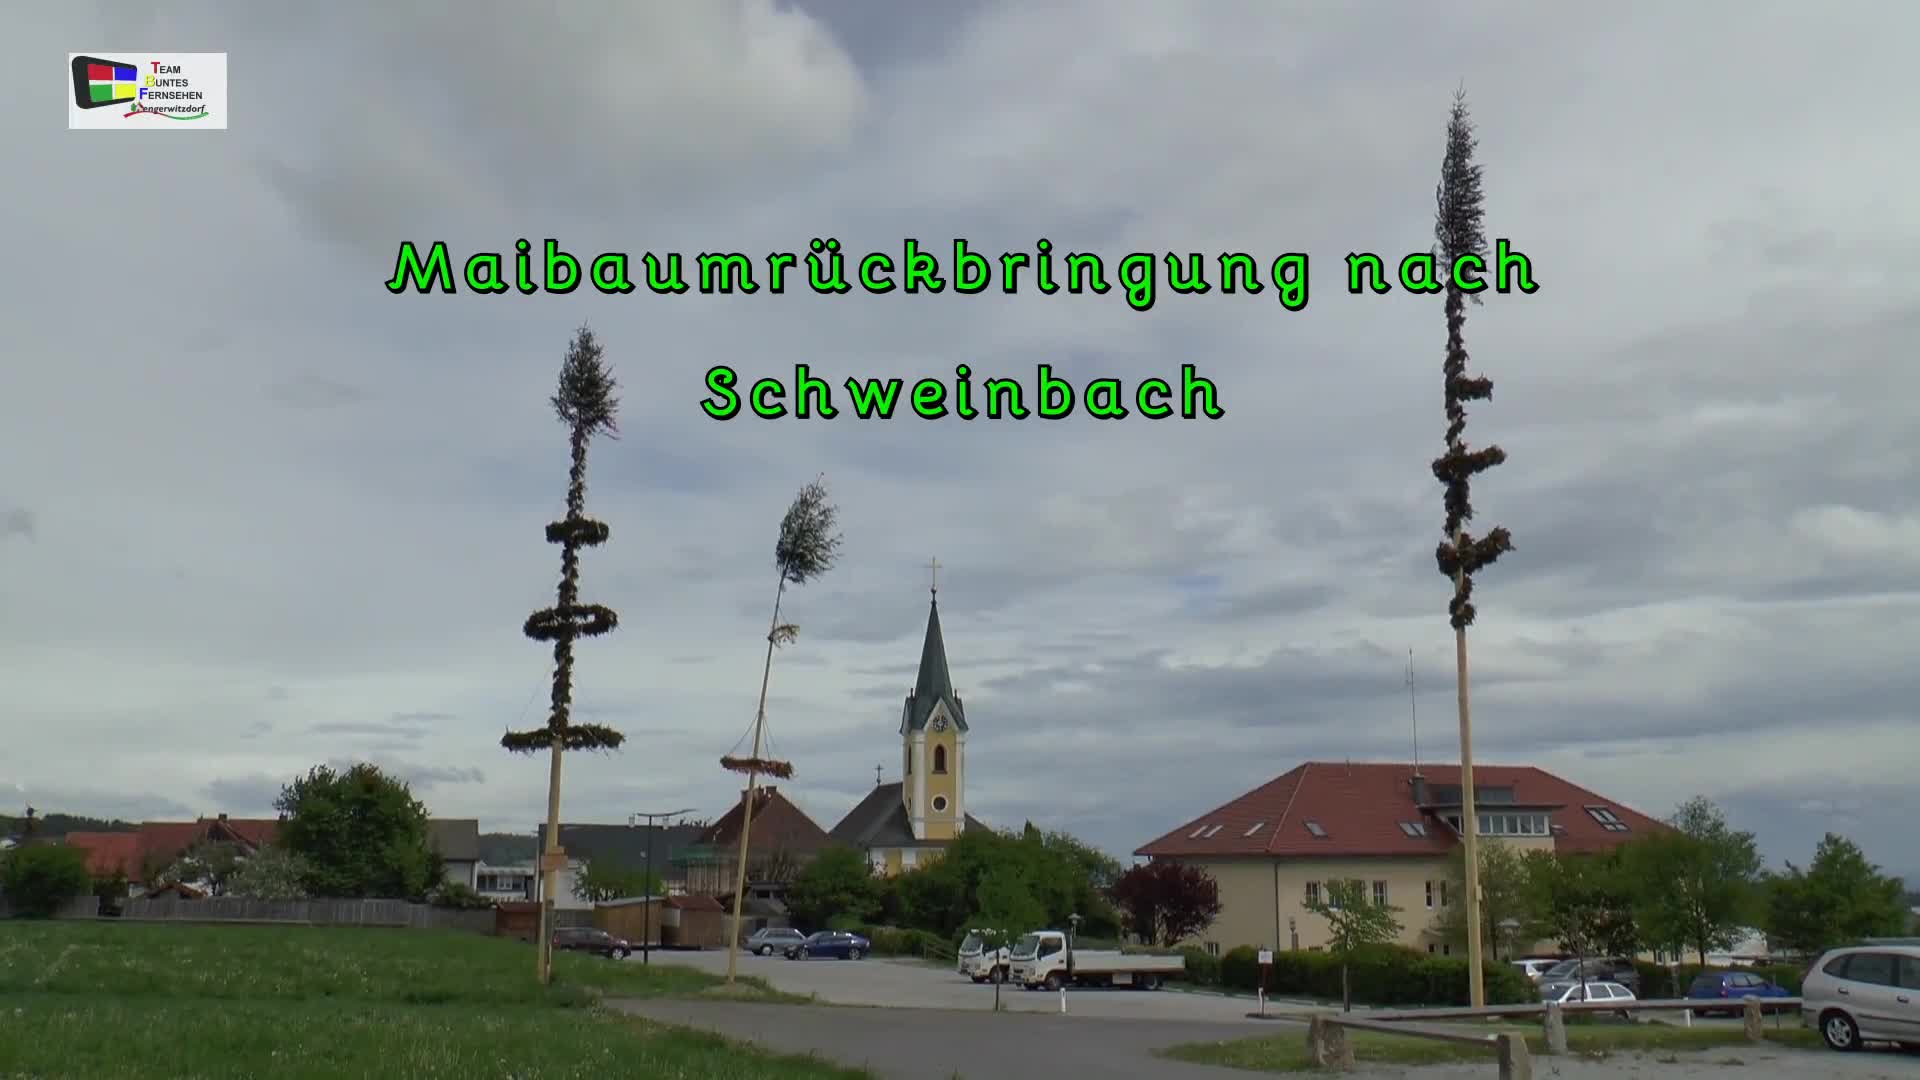 Maibaumrückbringung nach Schweinbach